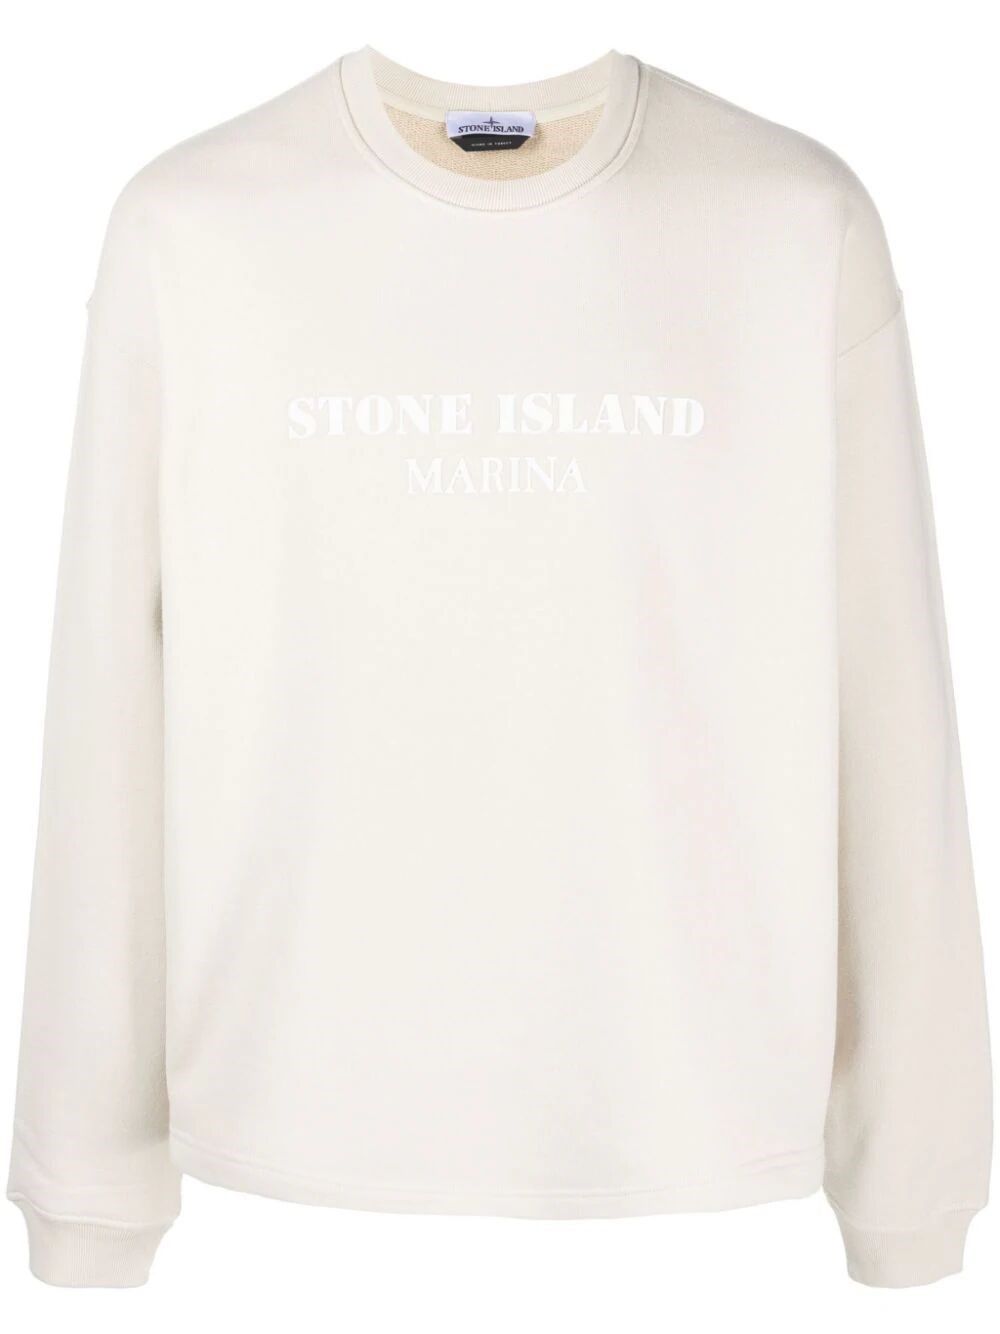 Stone Island Sweatshirt In White